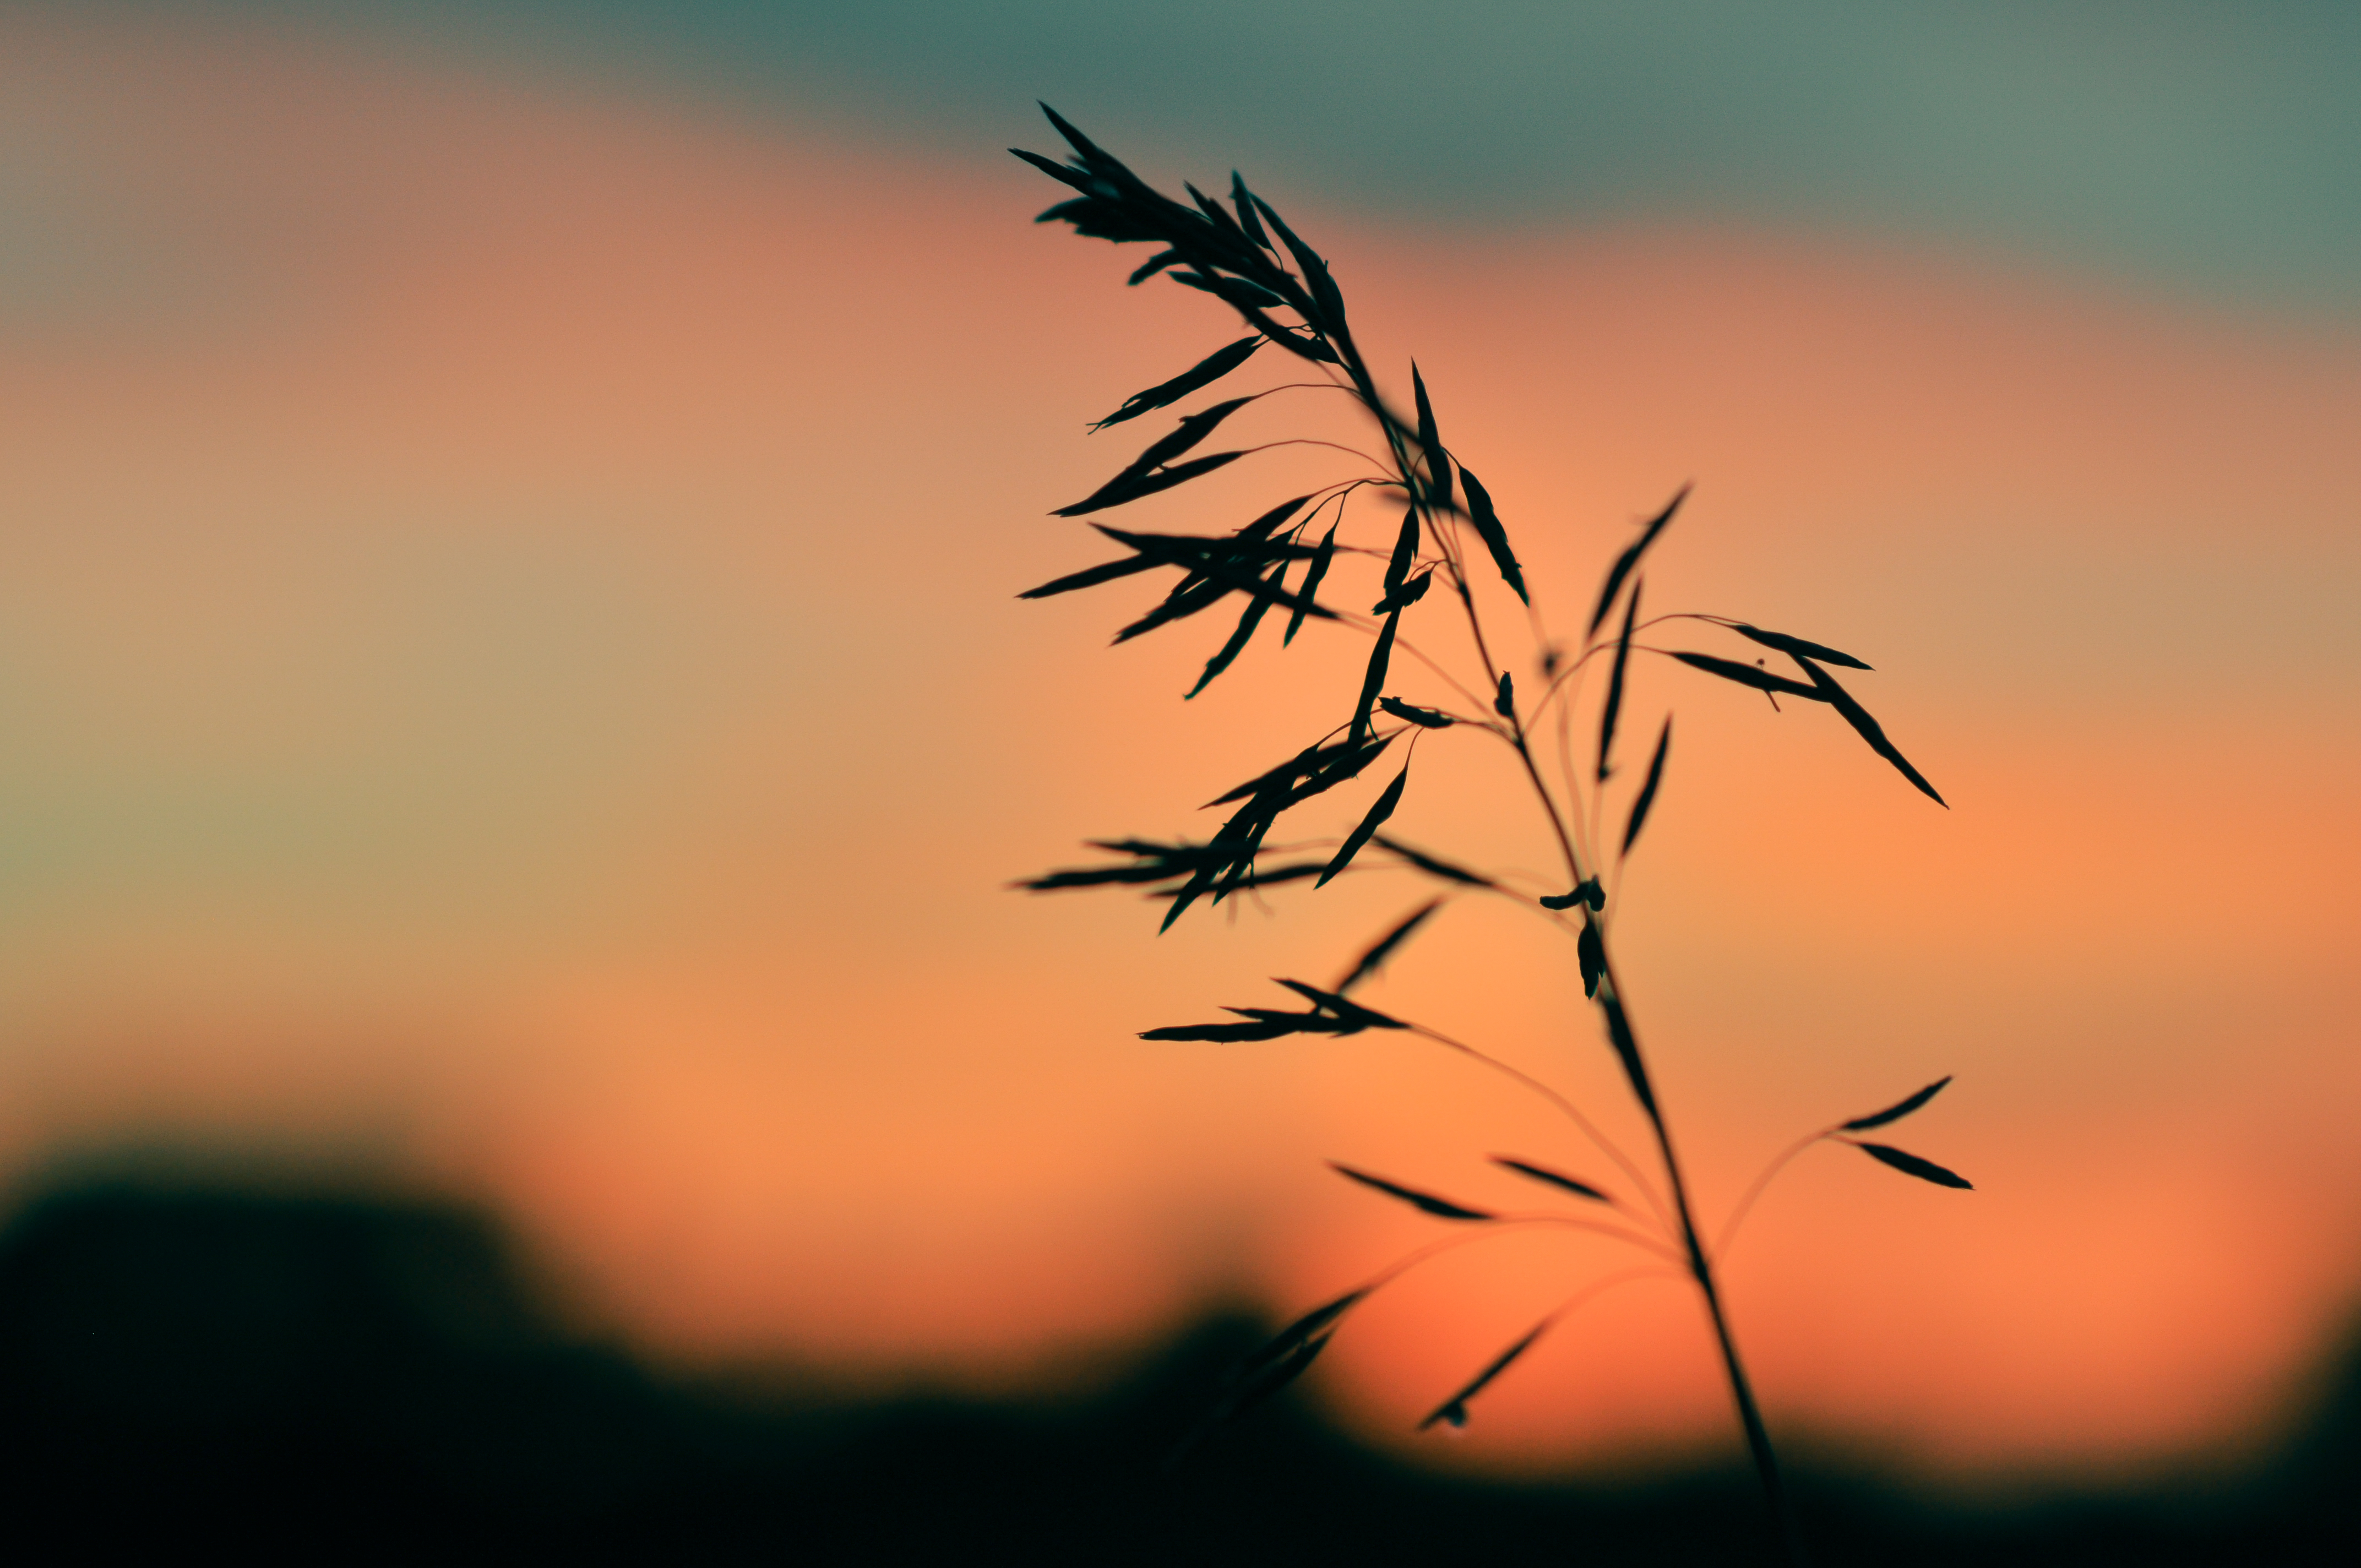 Wild grass at sunset